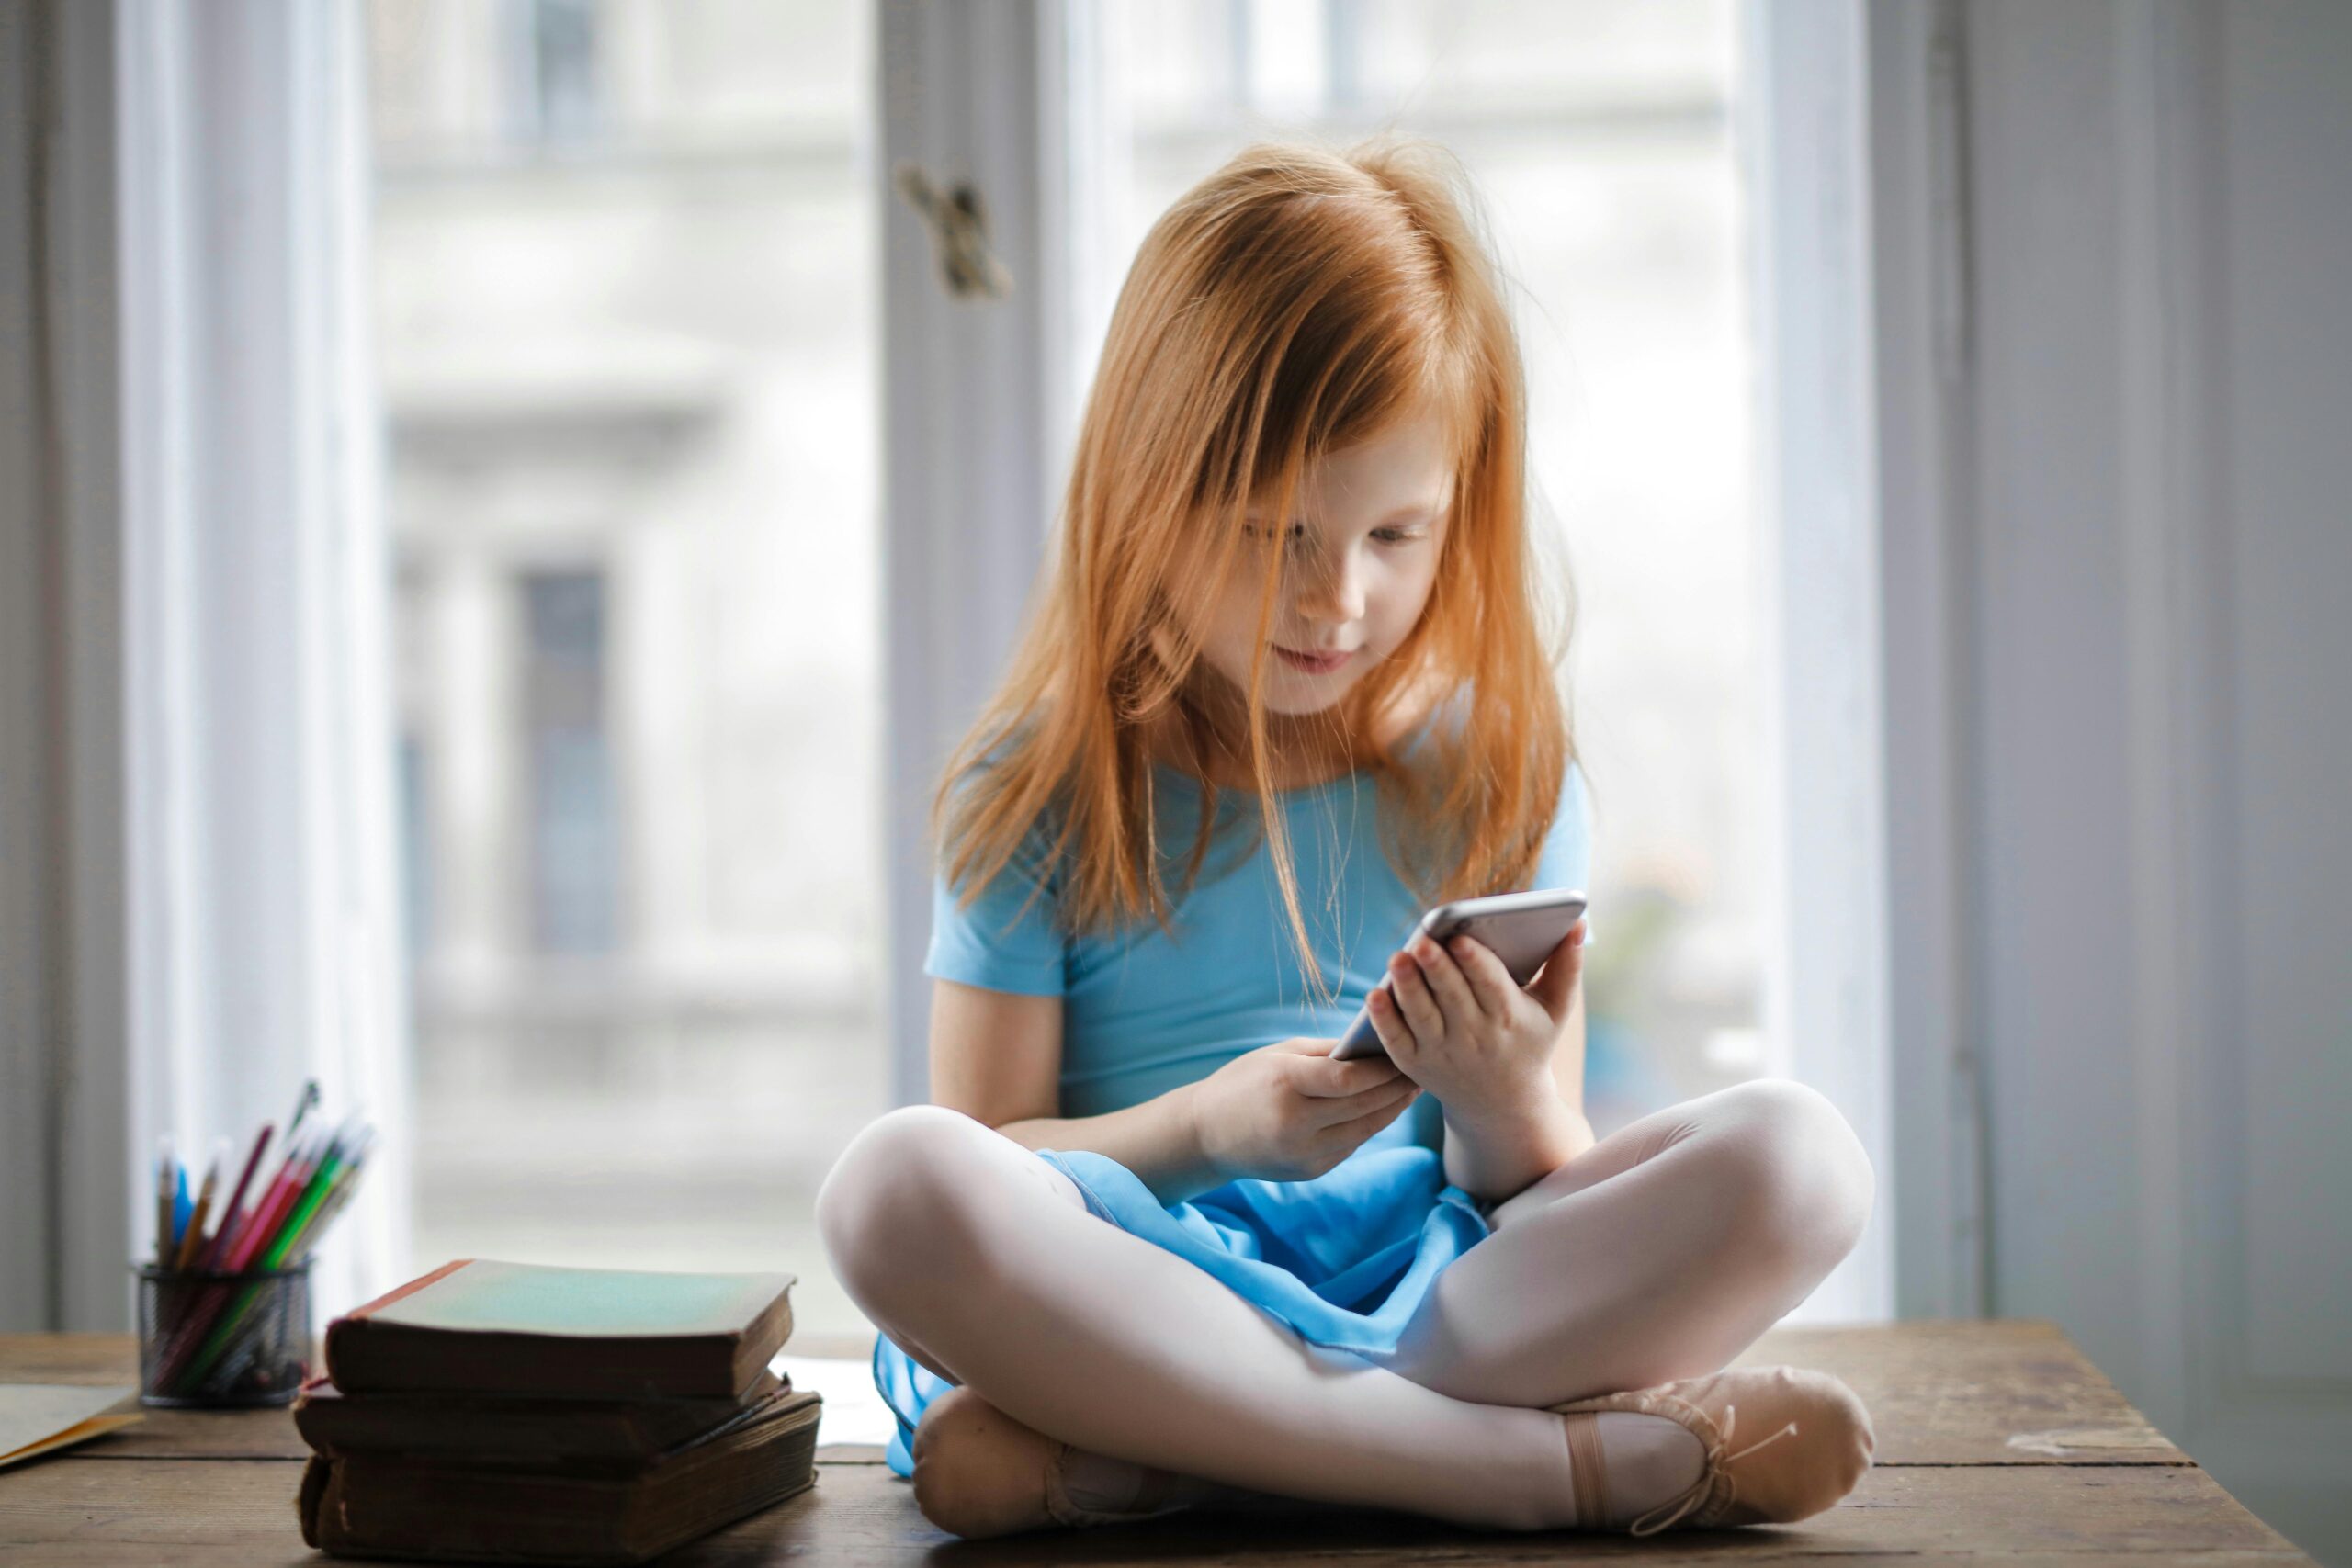 Γαλλία – Επιτροπή ειδικών: Πρέπει να περιοριστεί η χρήση smartphone και social media από παιδιά και εφήβους